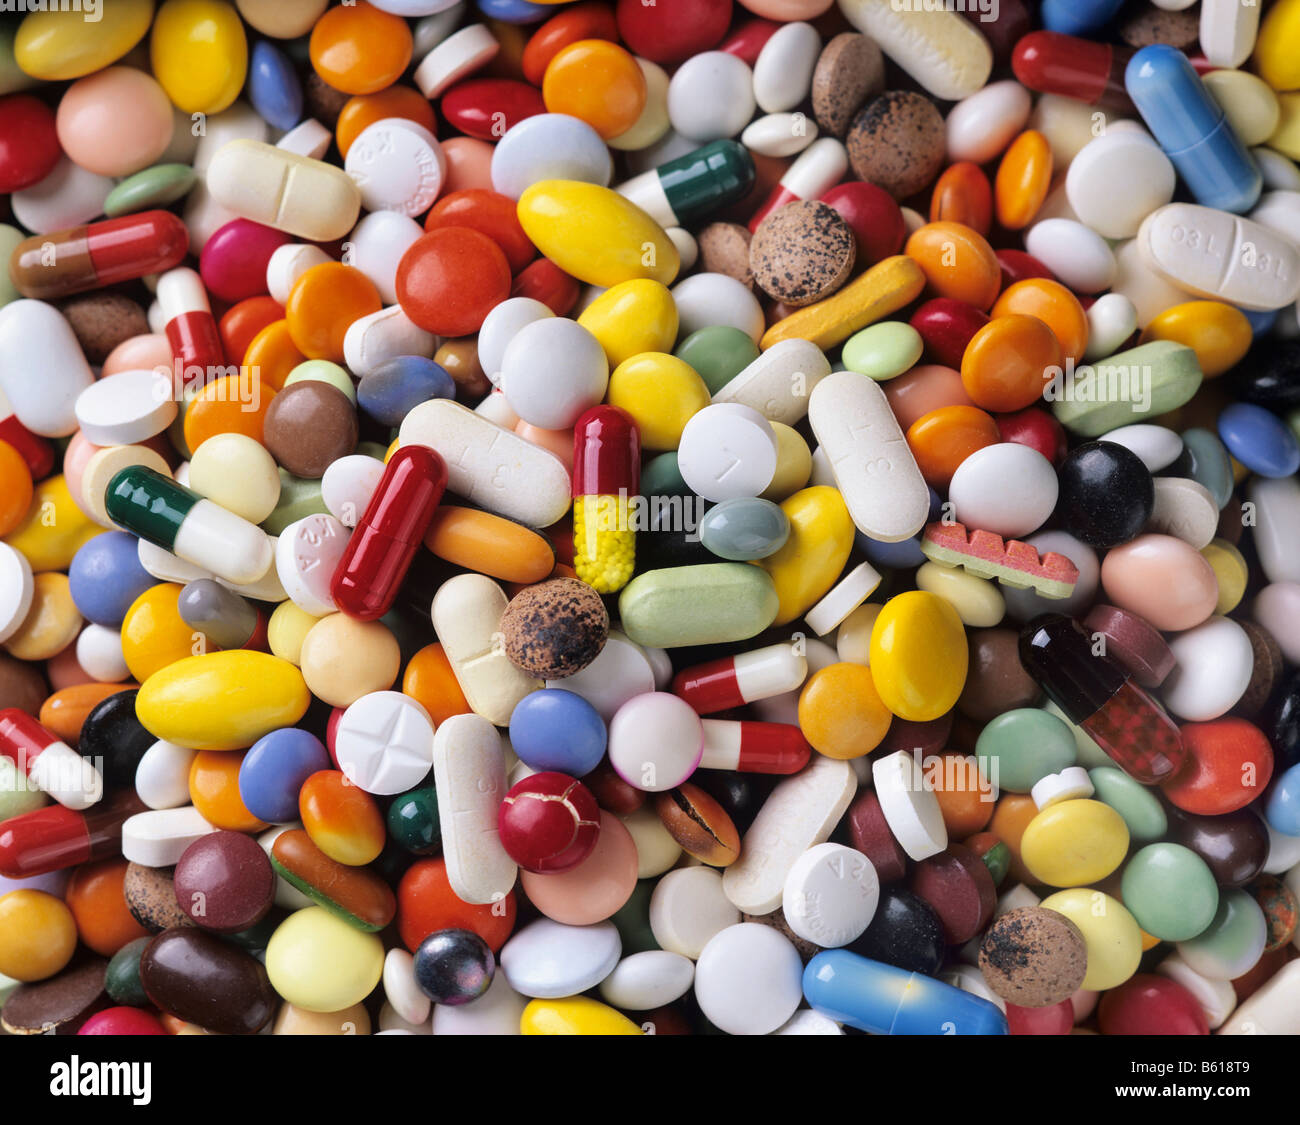 Abgelaufen Medizin, geknackt und verblasst, Pillen, Kapseln und Tabletten,  full-frame Stockfotografie - Alamy